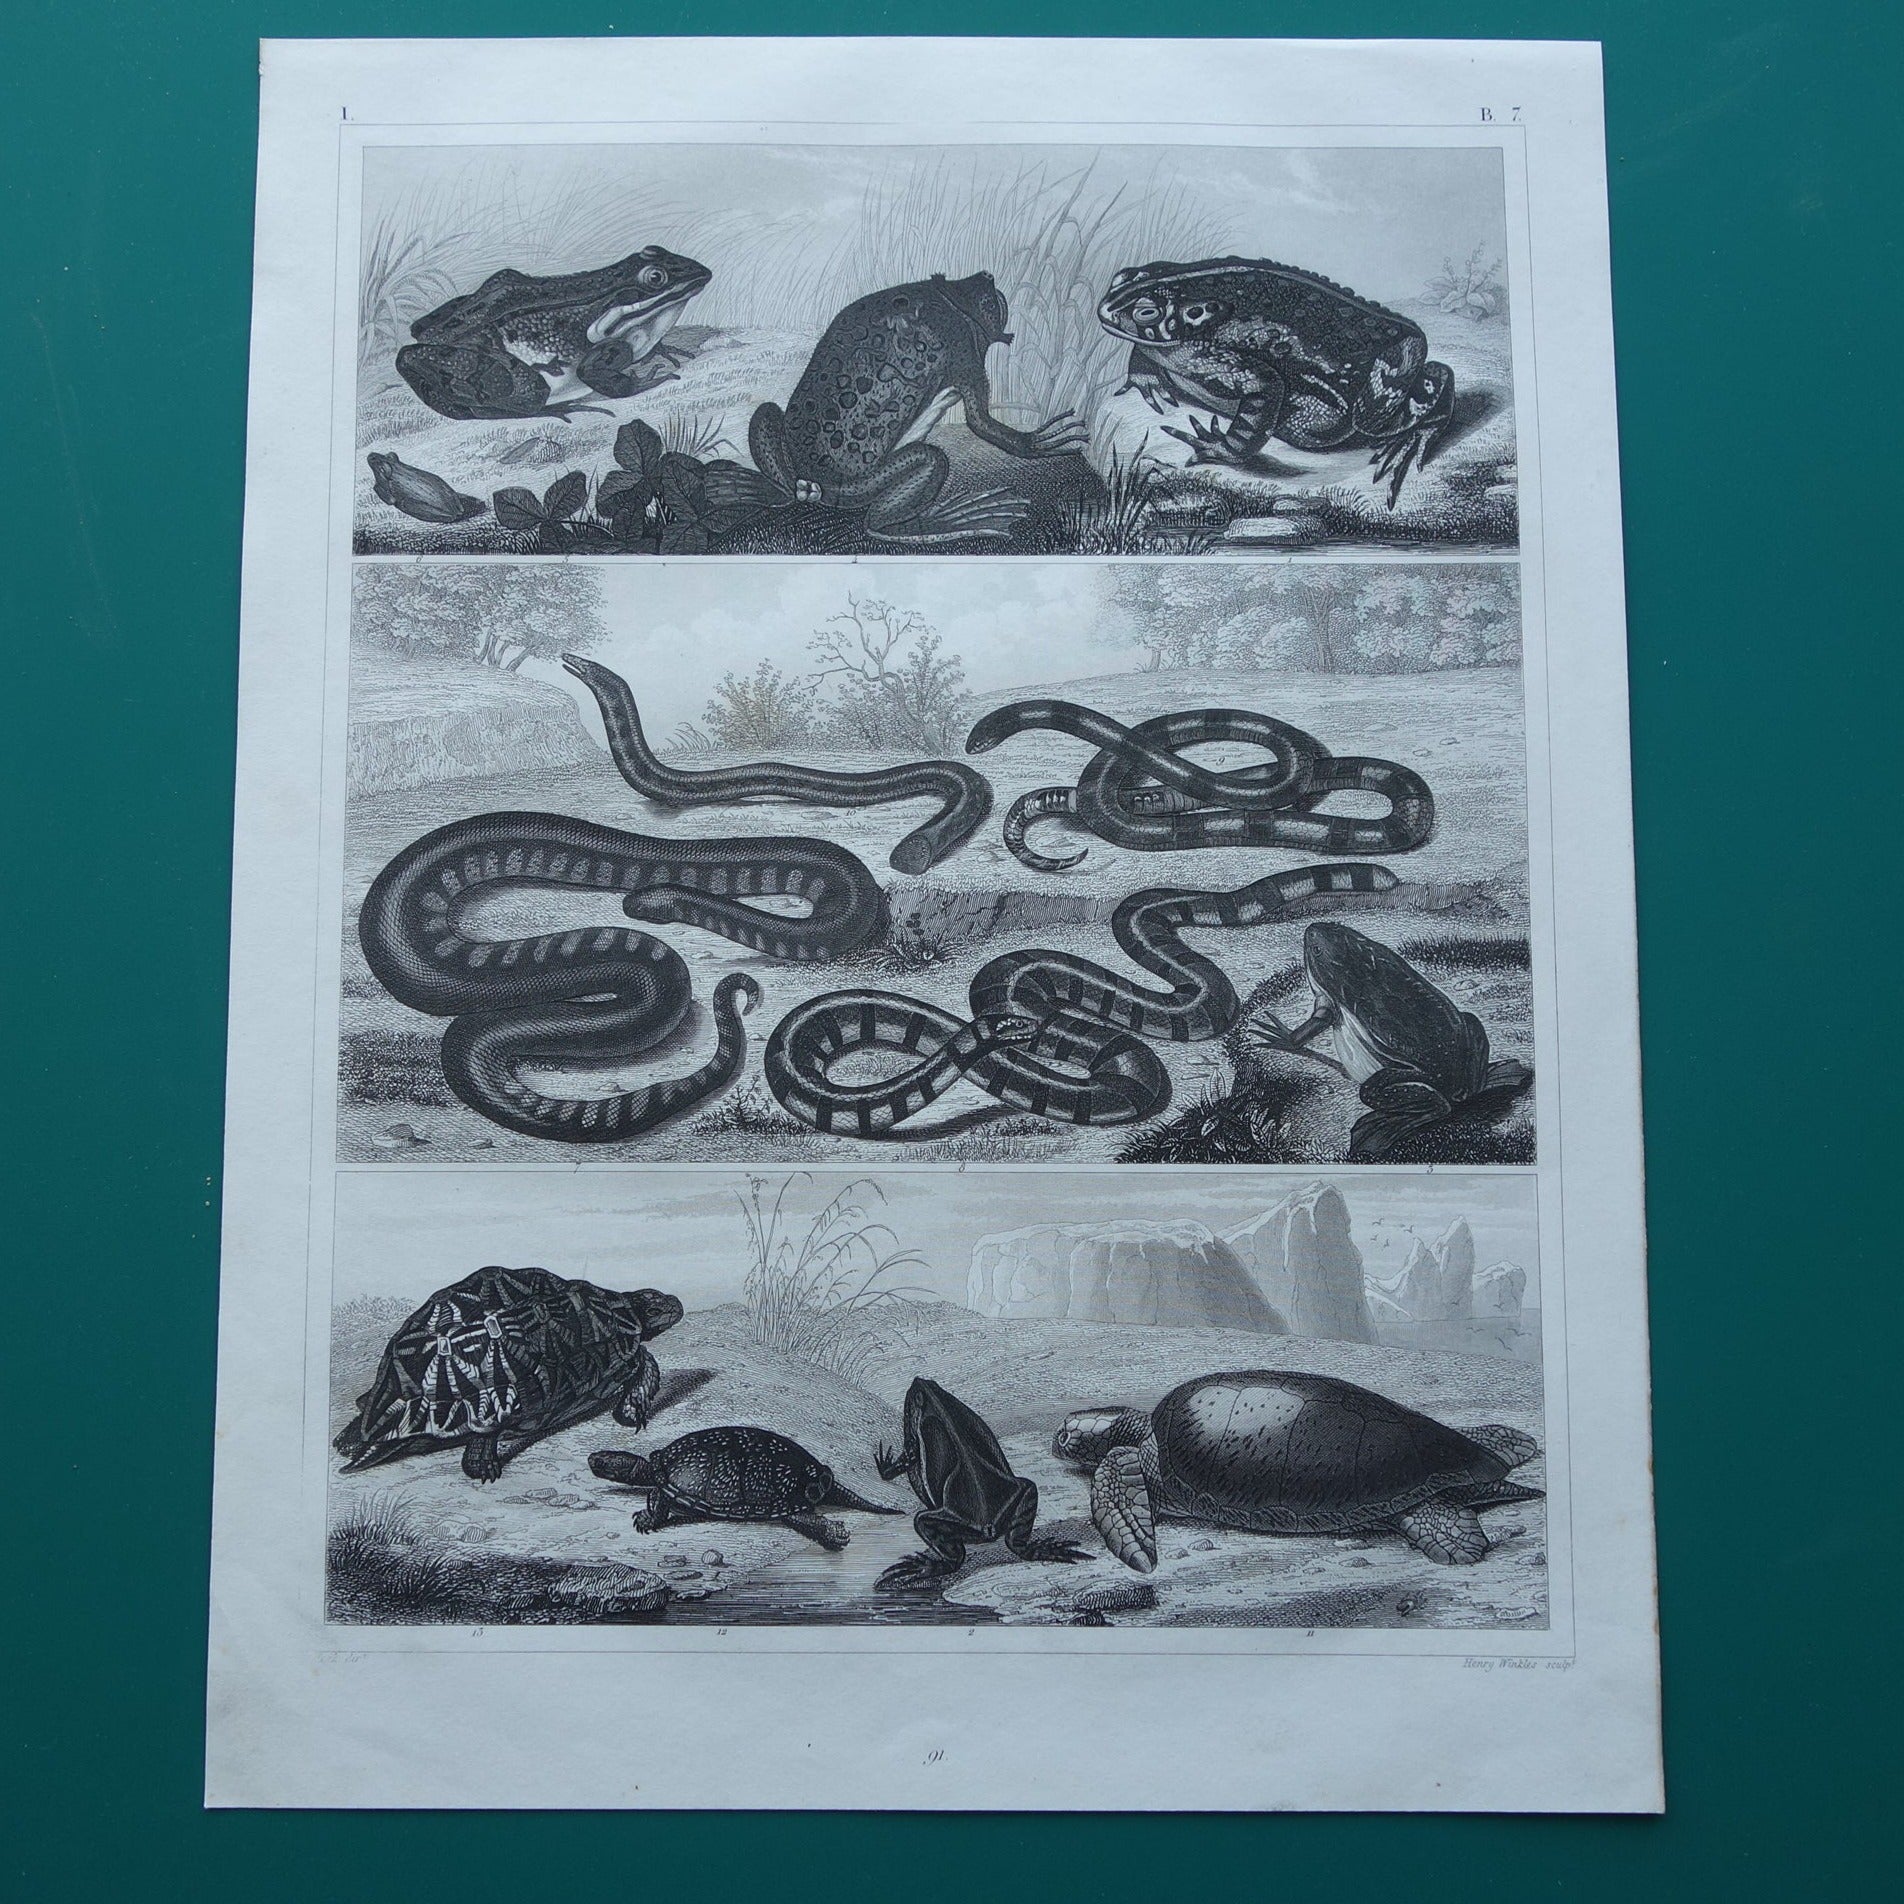 Kikker Slang Schildpad oude reptielen prent uit het jaar 1849 originele antieke Kikkers Padden Slangen illustratie vintage prints